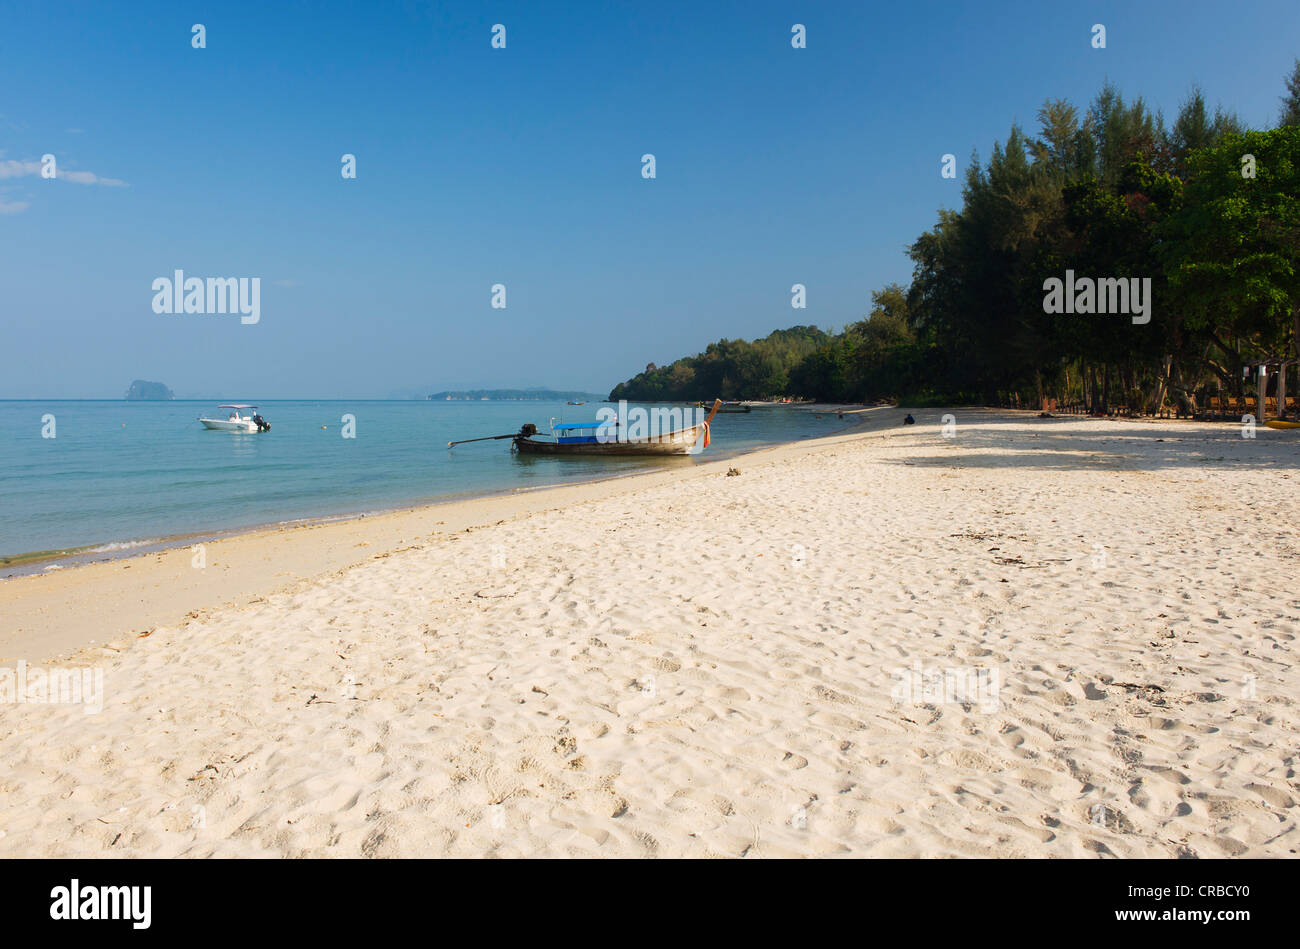 Longtail boat on a sandy beach, Tub Kaek Beach, Krabi, Thailand, Asia Stock Photo